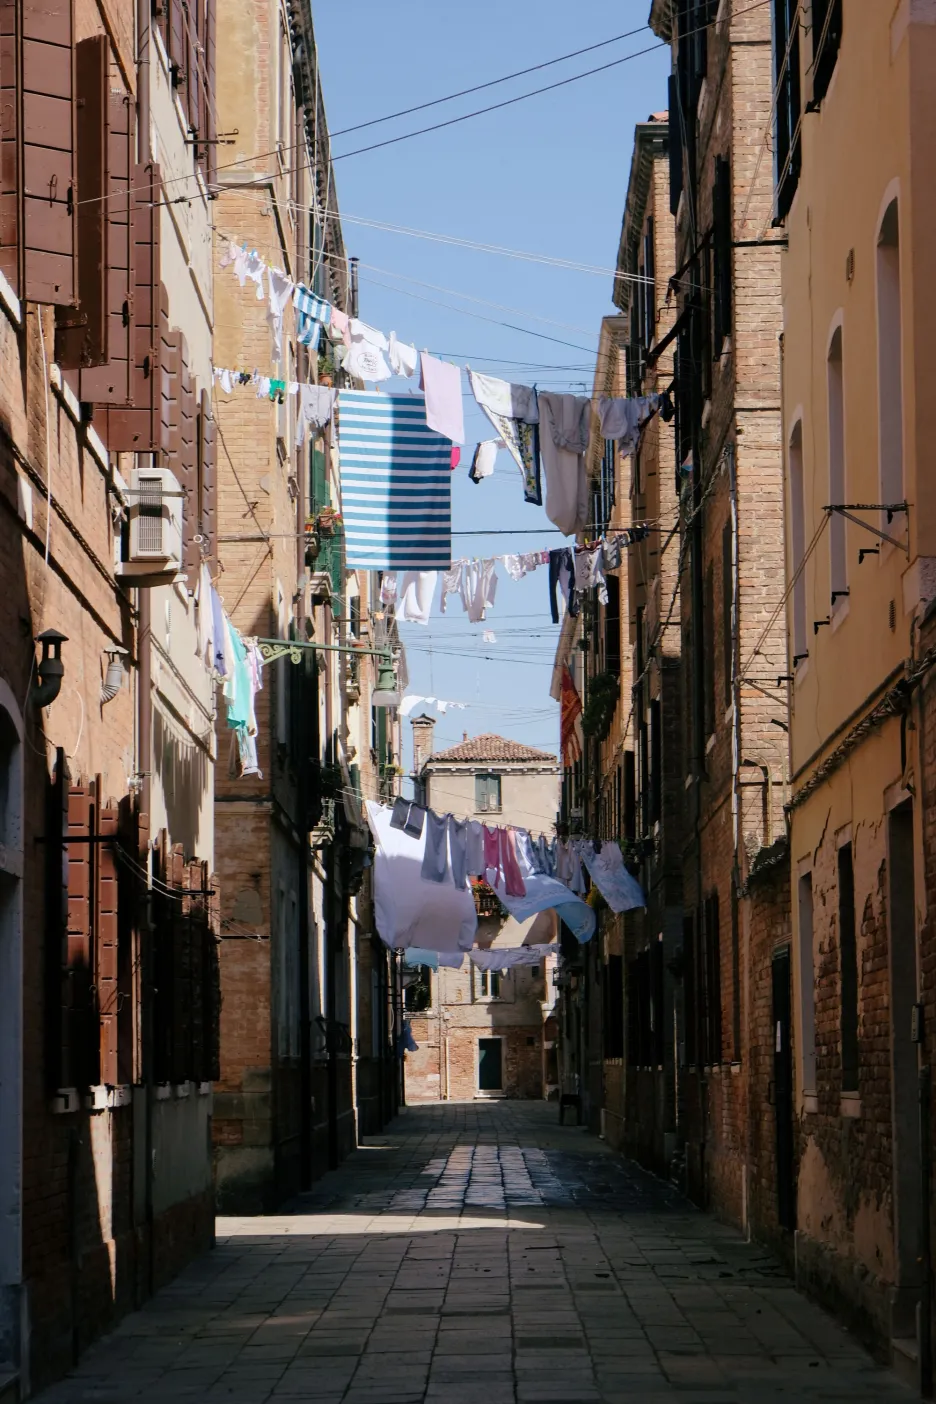 Benátky jsou světovým unikátem se spoustou specifik a netradičních místních zvyklostí 